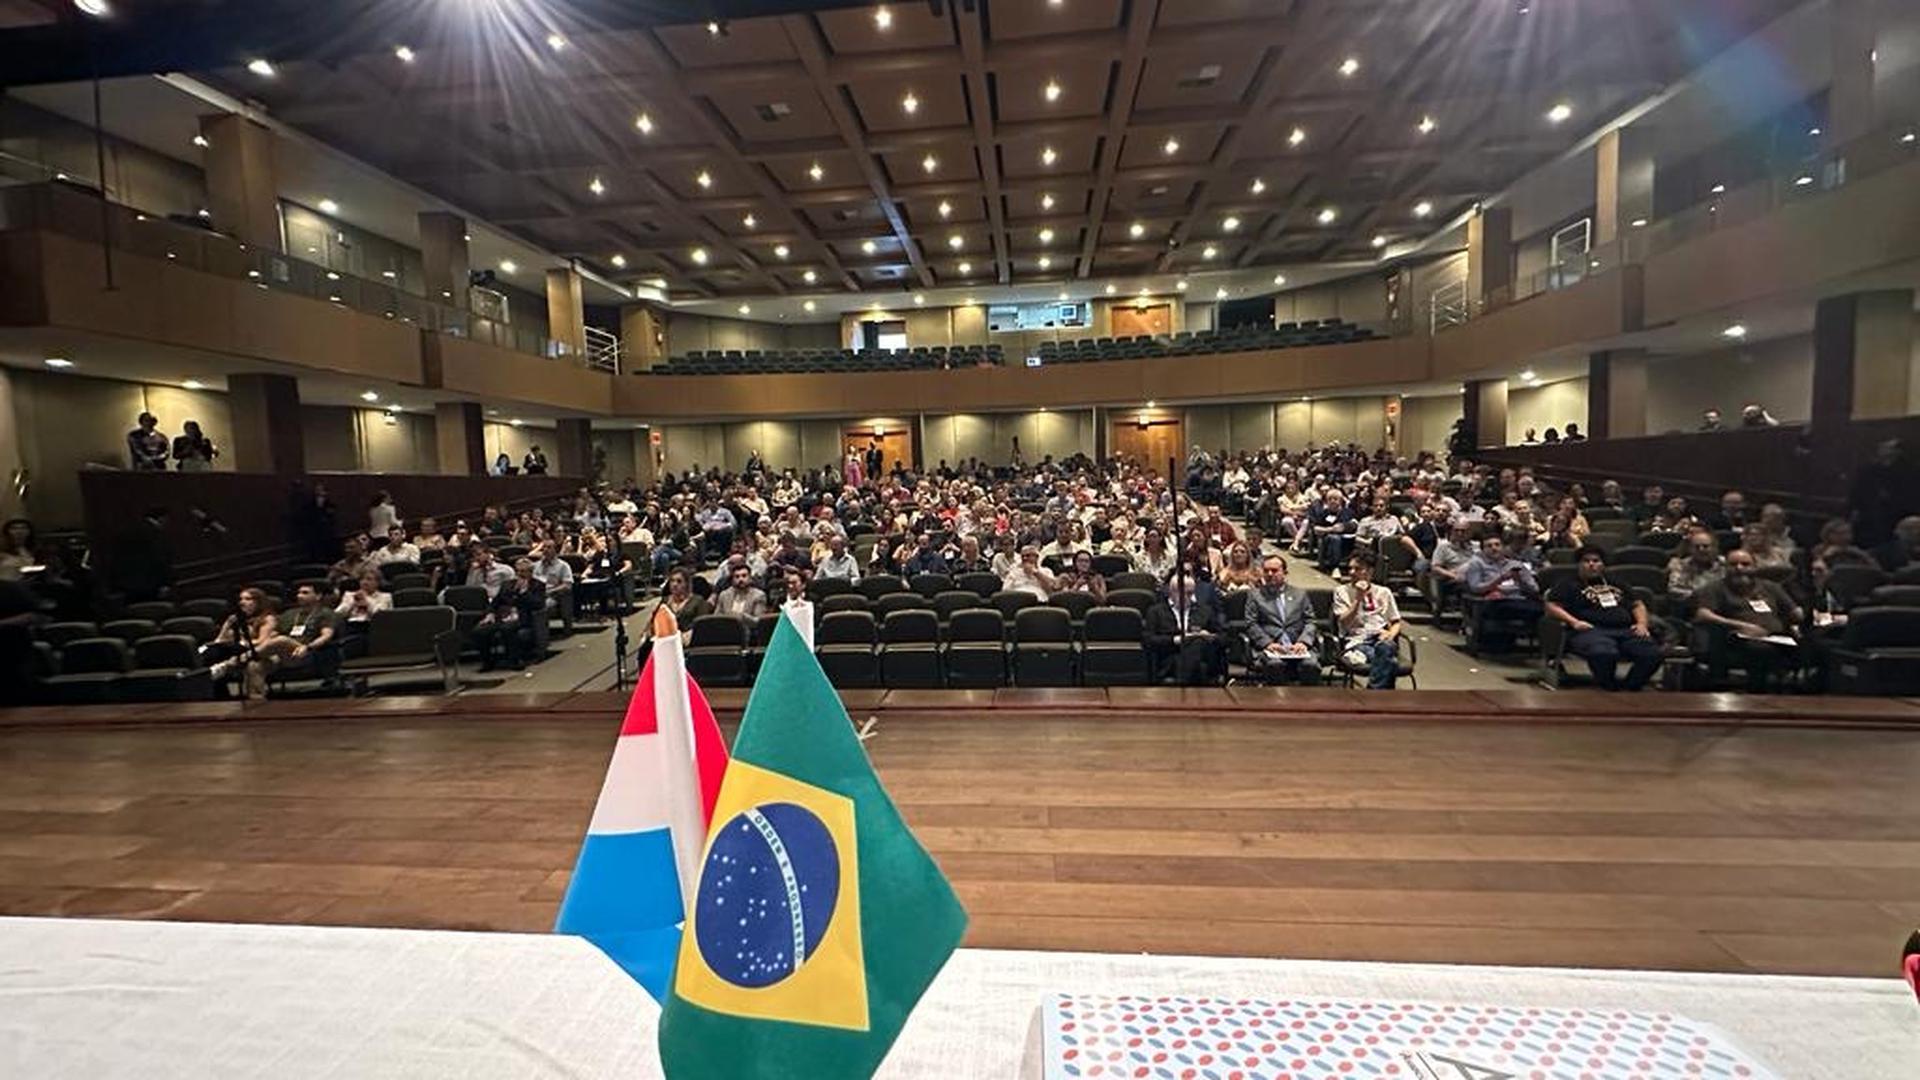 Des représentants de cinq partis politiques luxembourgeois se sont rendus à Florianopolis afin d'échanger avec des députés brésiliens et des Luxembourgeois résidant au Brésil.